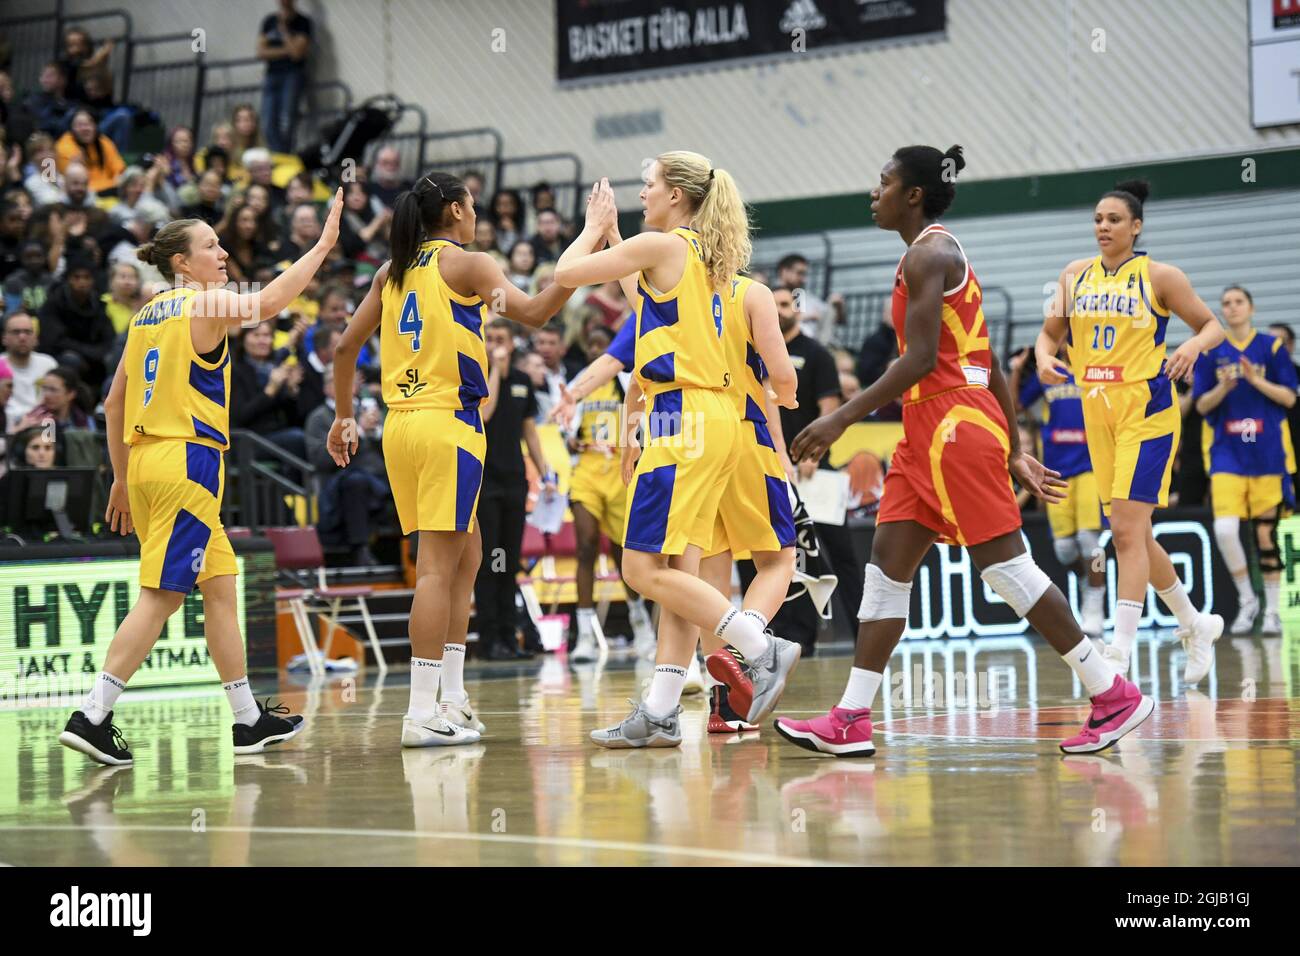 Das schwedische Team feiert, wie Mazedoniens Krisi Givens am 15. November 2017 beim FIBA EuroBasket Women Qualifikationsspiel zwischen Schweden und Mazedonien in den Taljehallen in Sodertalje, Schweden, zuschaut. Foto: Fredrik Sandberg / TT / Code 10080 Stockfoto